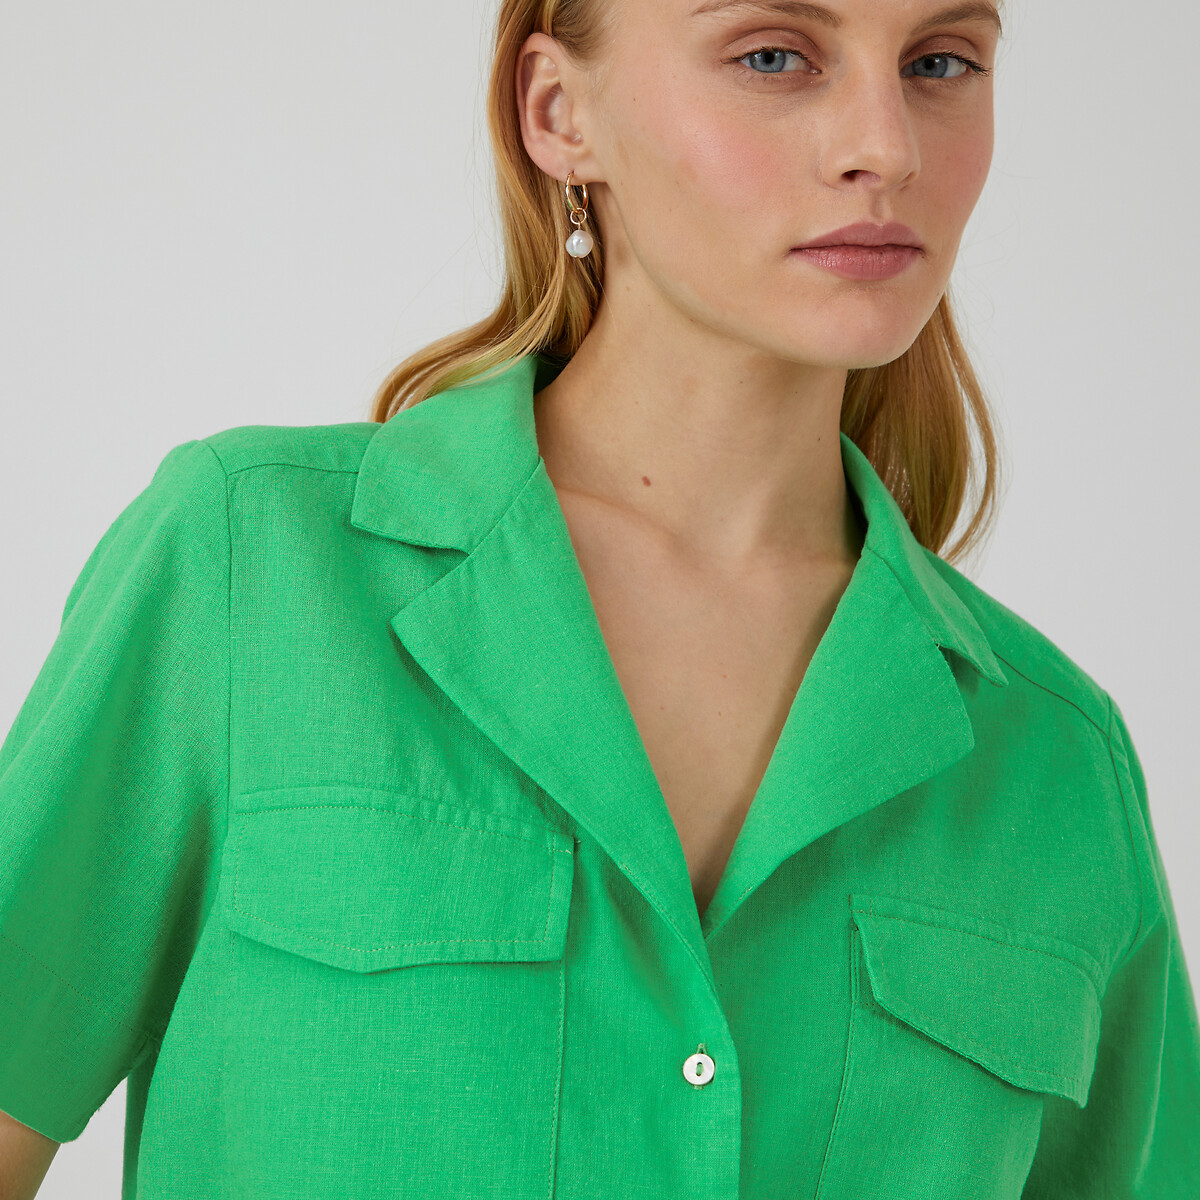 Рубашка с пиджачным воротником изо льна и хлопка  40 (FR) - 46 (RUS) зеленый LaRedoute, размер 40 (FR) - 46 (RUS) Рубашка с пиджачным воротником изо льна и хлопка  40 (FR) - 46 (RUS) зеленый - фото 1